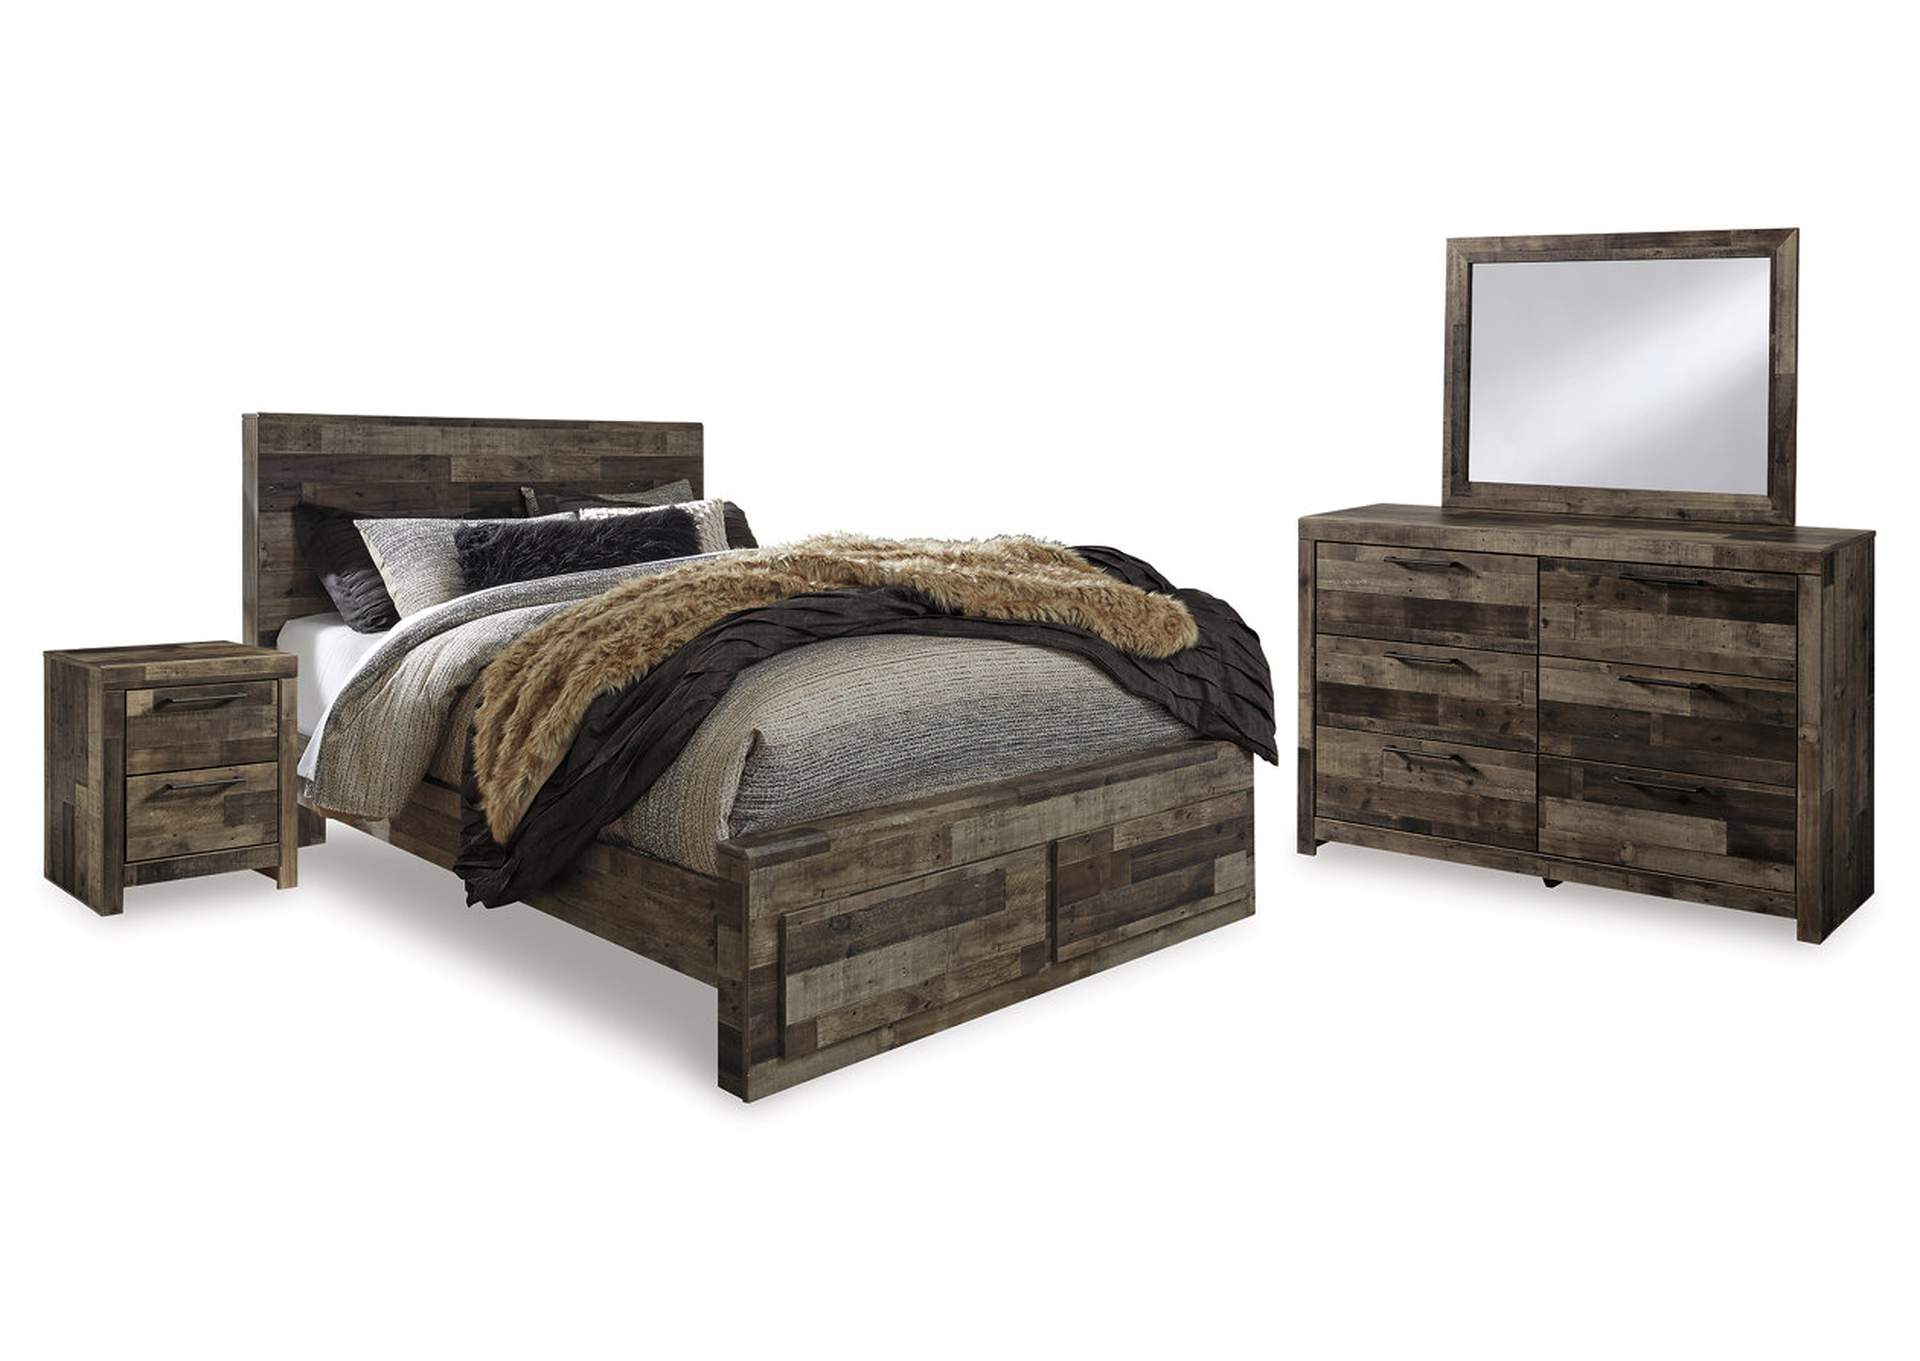 Derekson Queen Panel Storage Bed, Dresser, Mirror and 2 Nightstands,Signature Design By Ashley